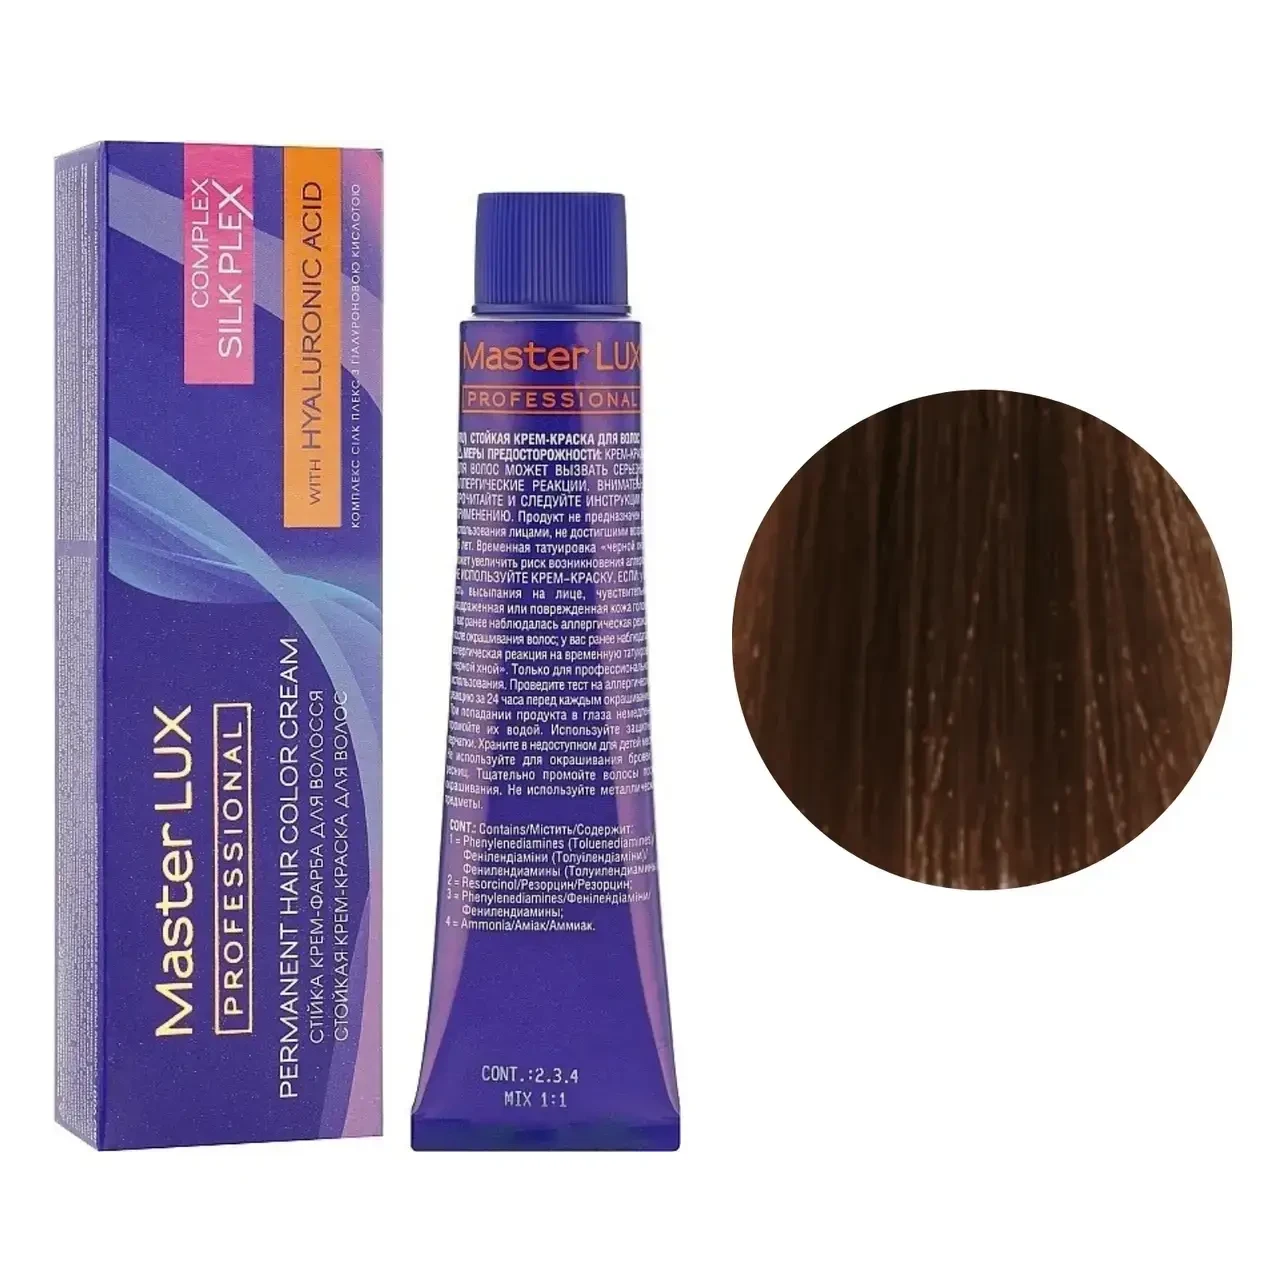 Крем-фарба для волосся Master LUX professional 60 мл. 5.34 свiтлий шатен золотисто-мідний